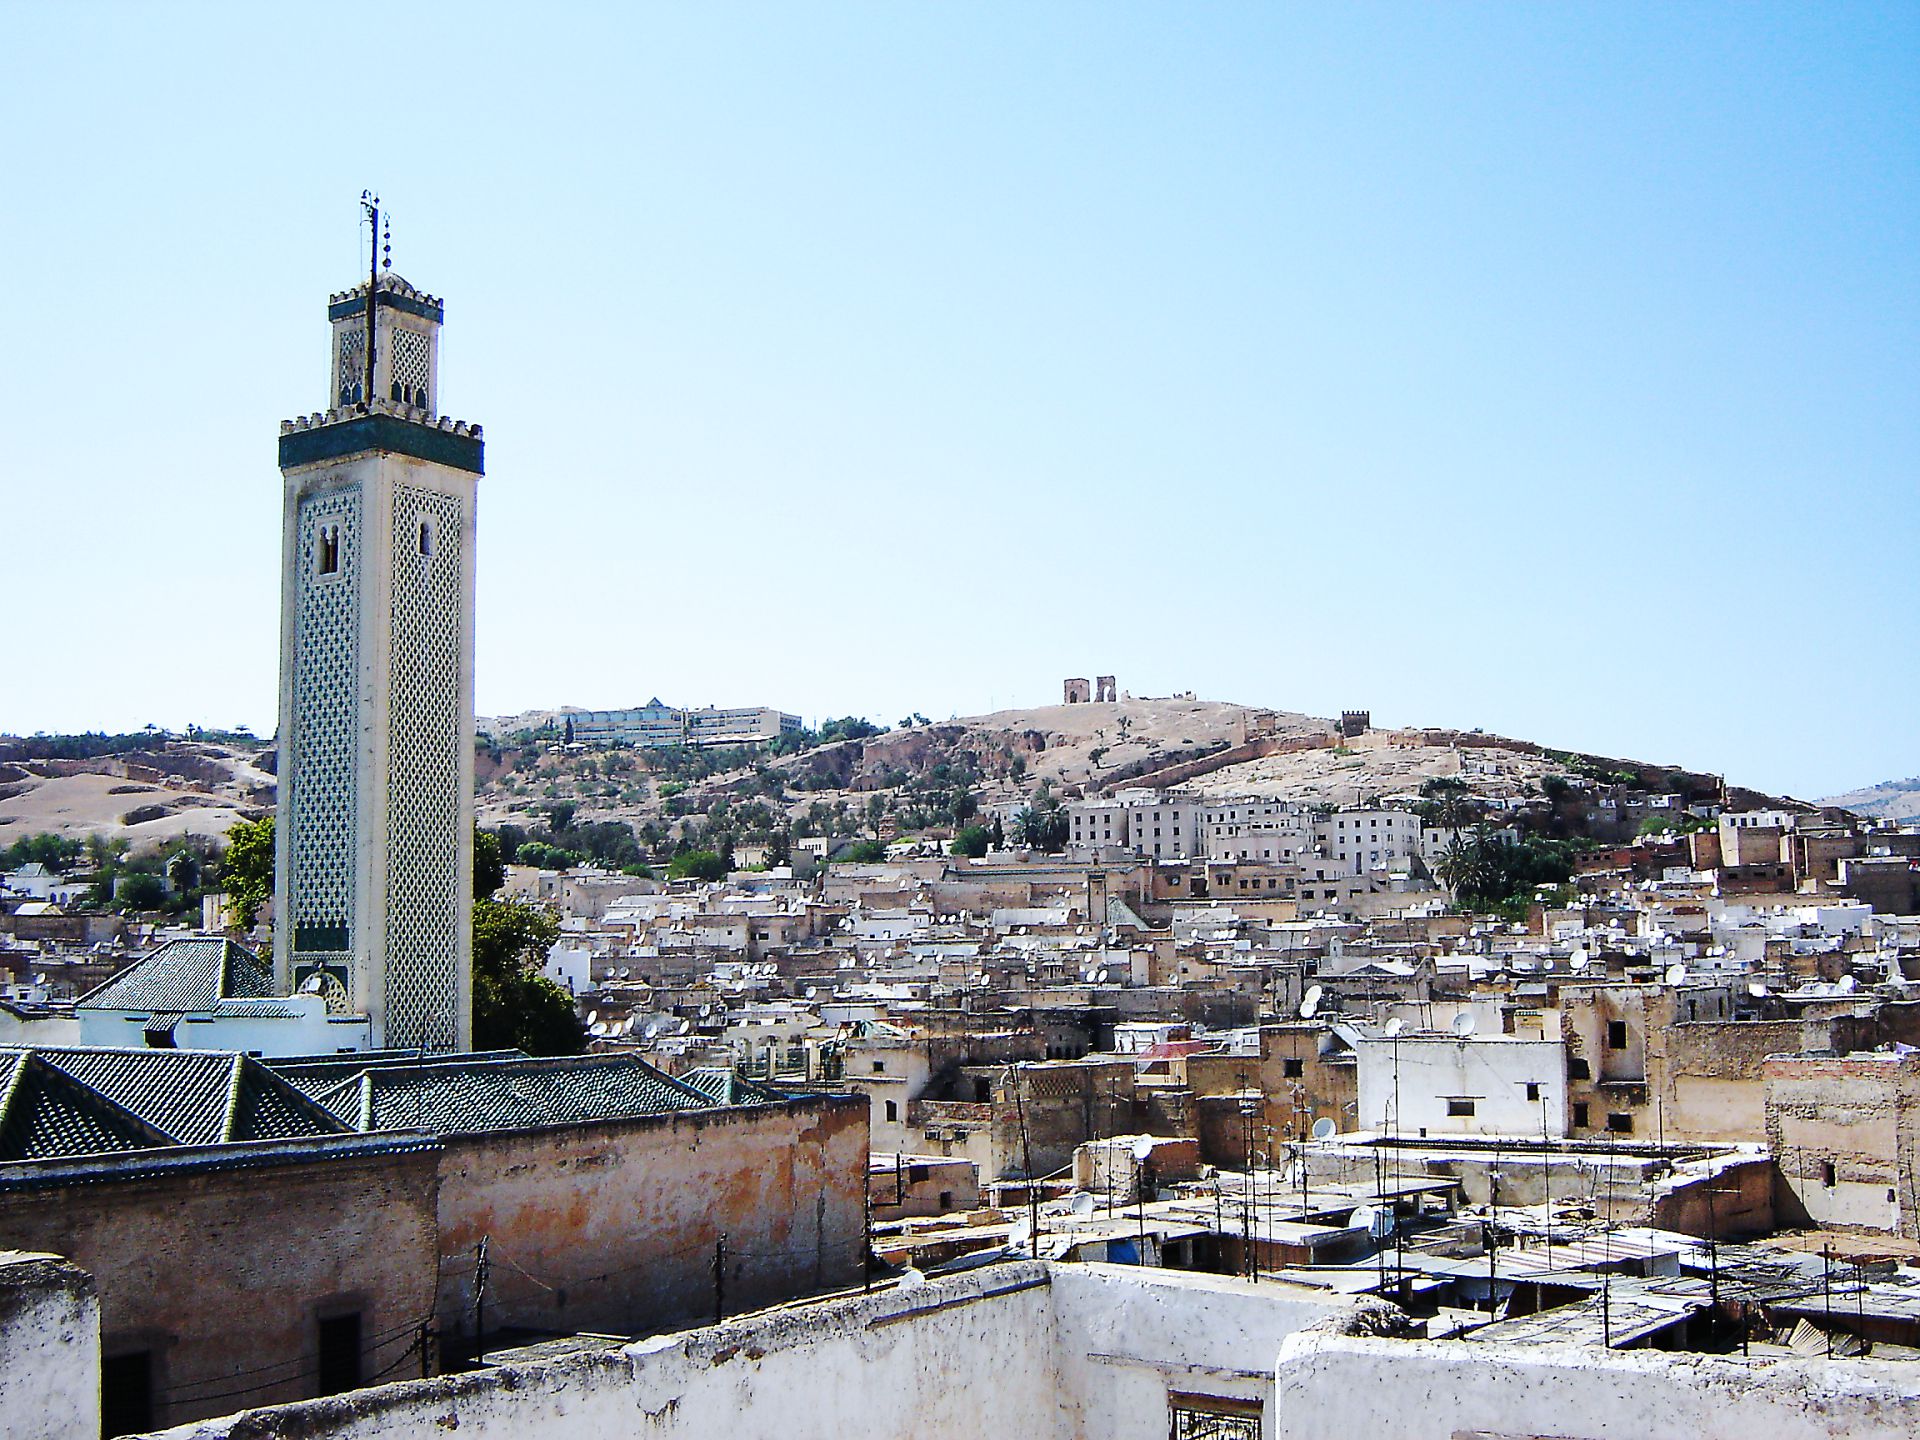 Khám phá Fes, thành phố cổ có di tích được cả UNESCO và kỷ lục Guinness thế giới vinh danh - Ảnh 3.